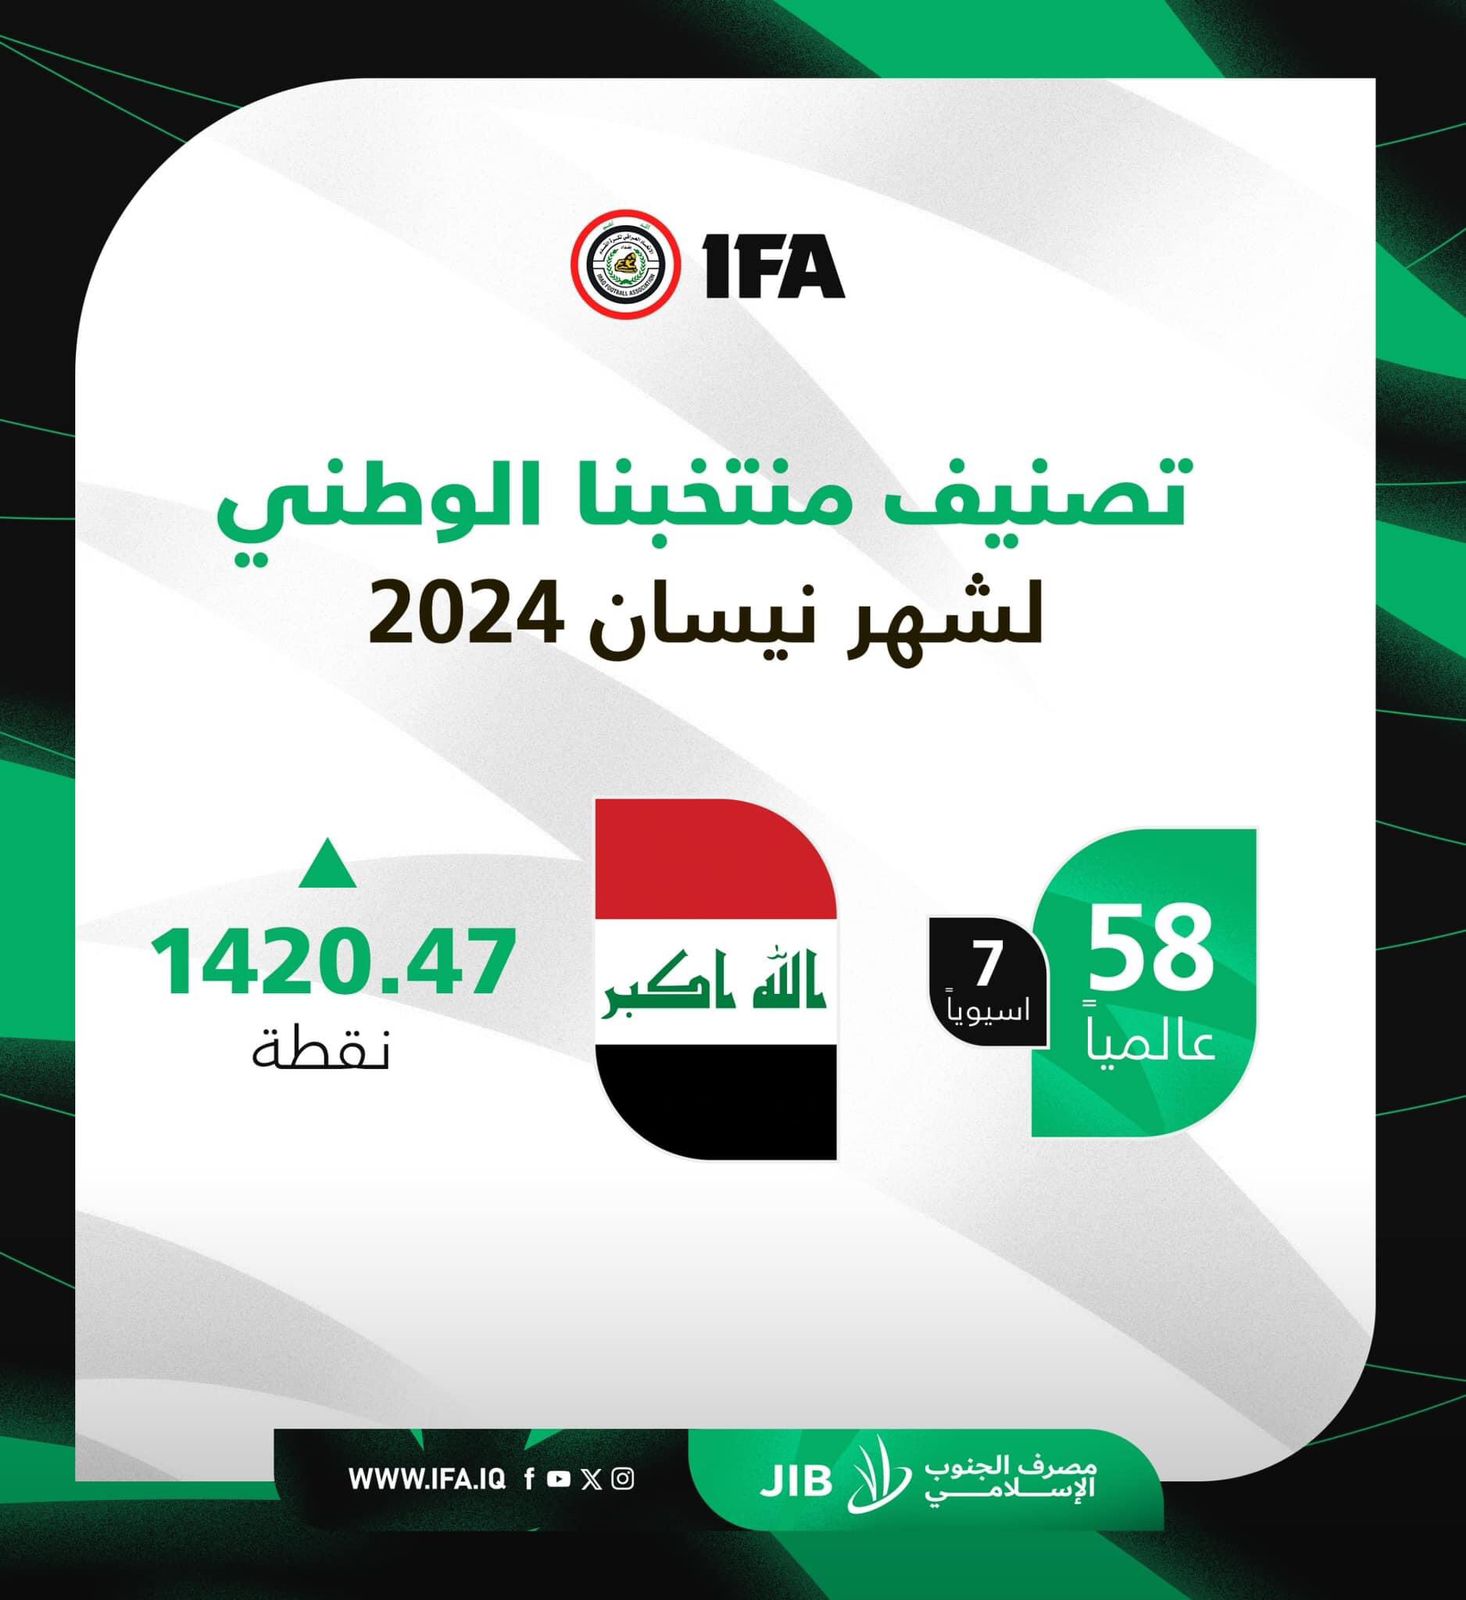 المنتخب العراقي في المرتبة 58 عالمياً والـ7 آسيوياً بتصنيف الفيفا لشهر نيسان